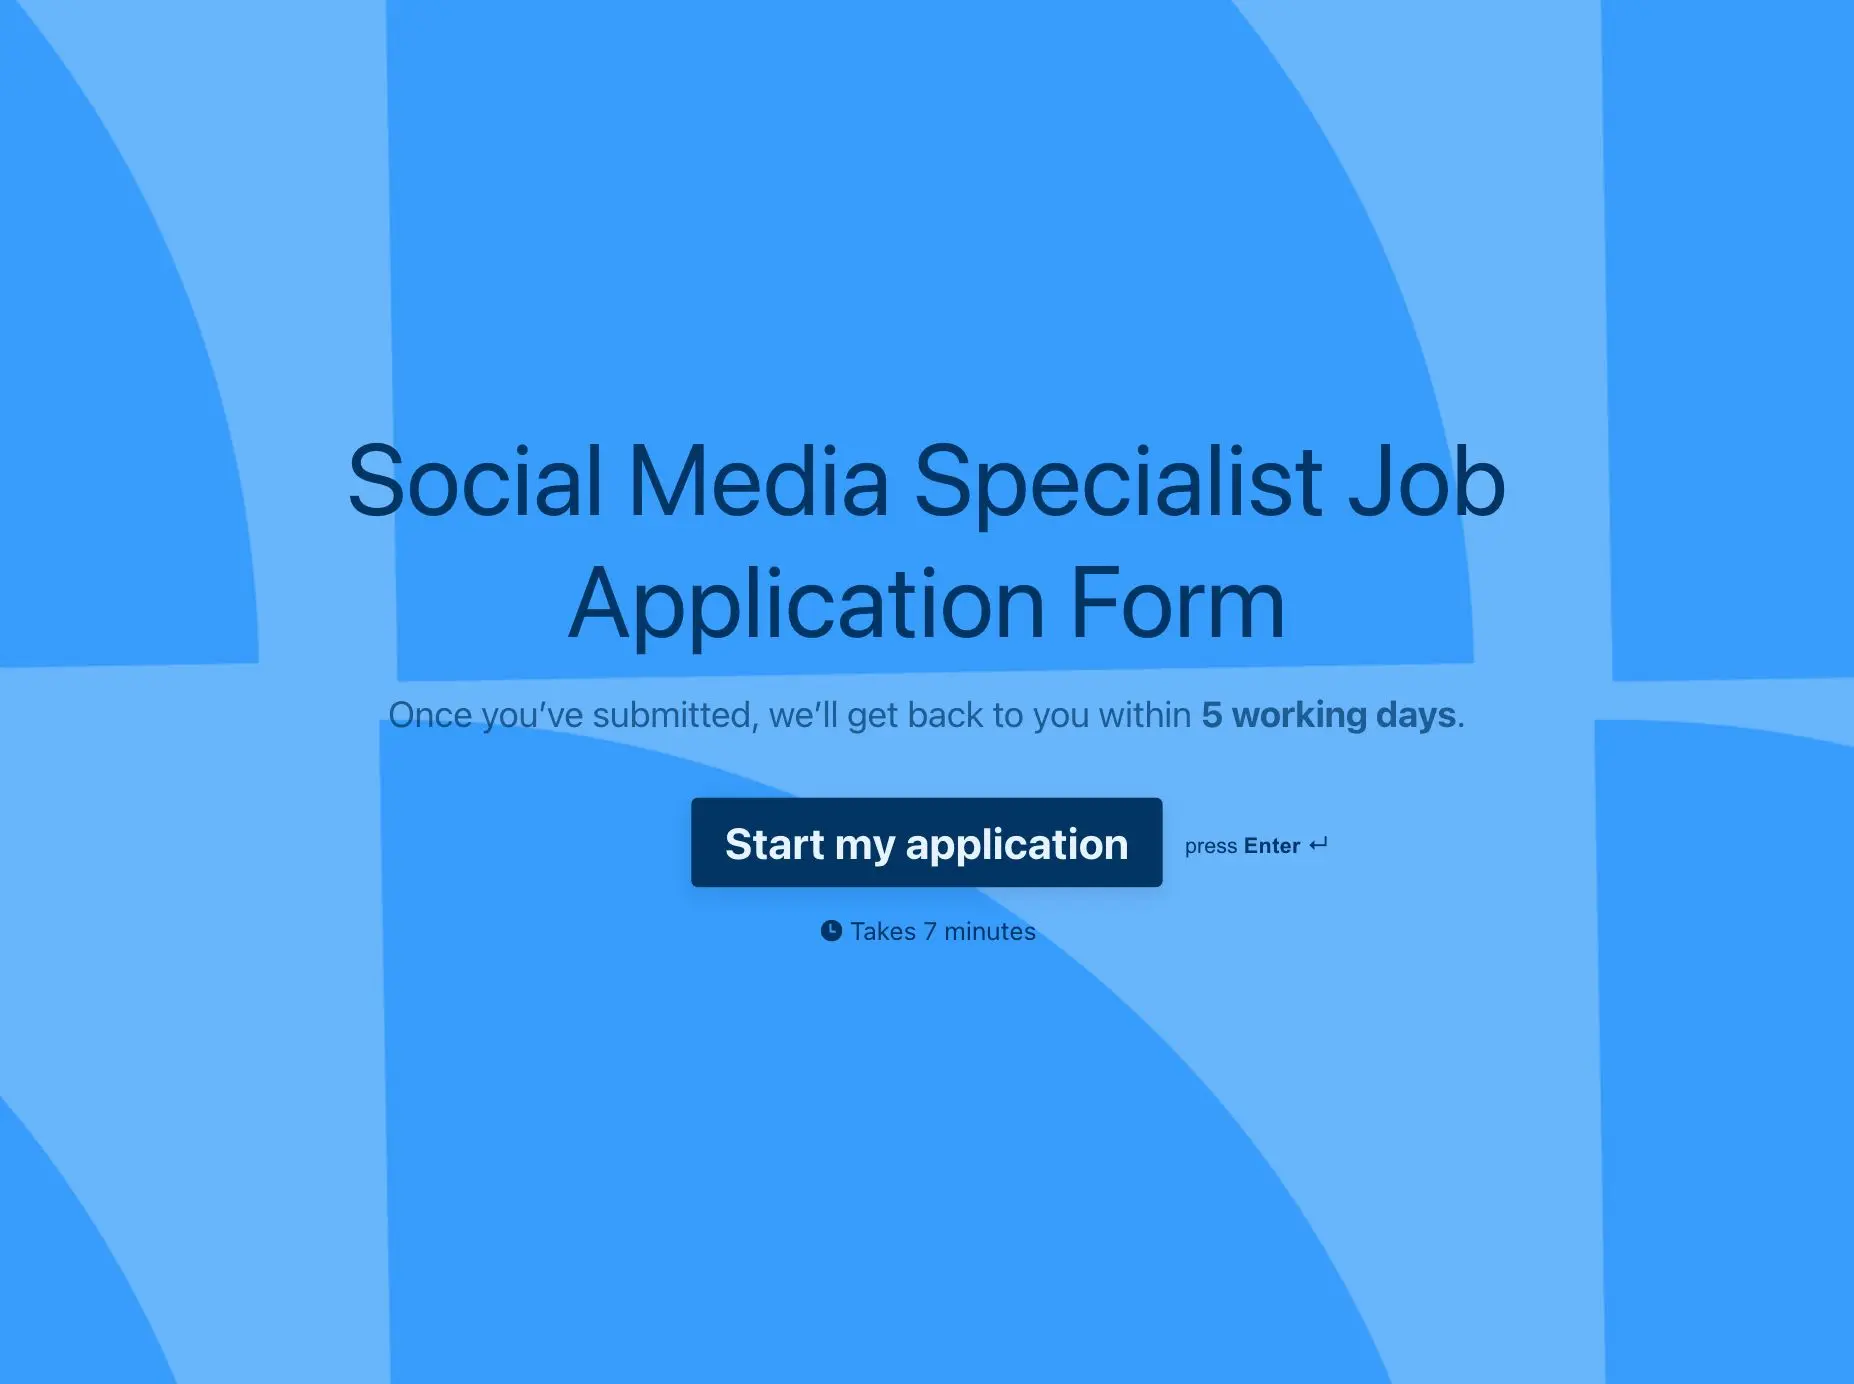 Social Media Specialist Job Application Form Template Hero